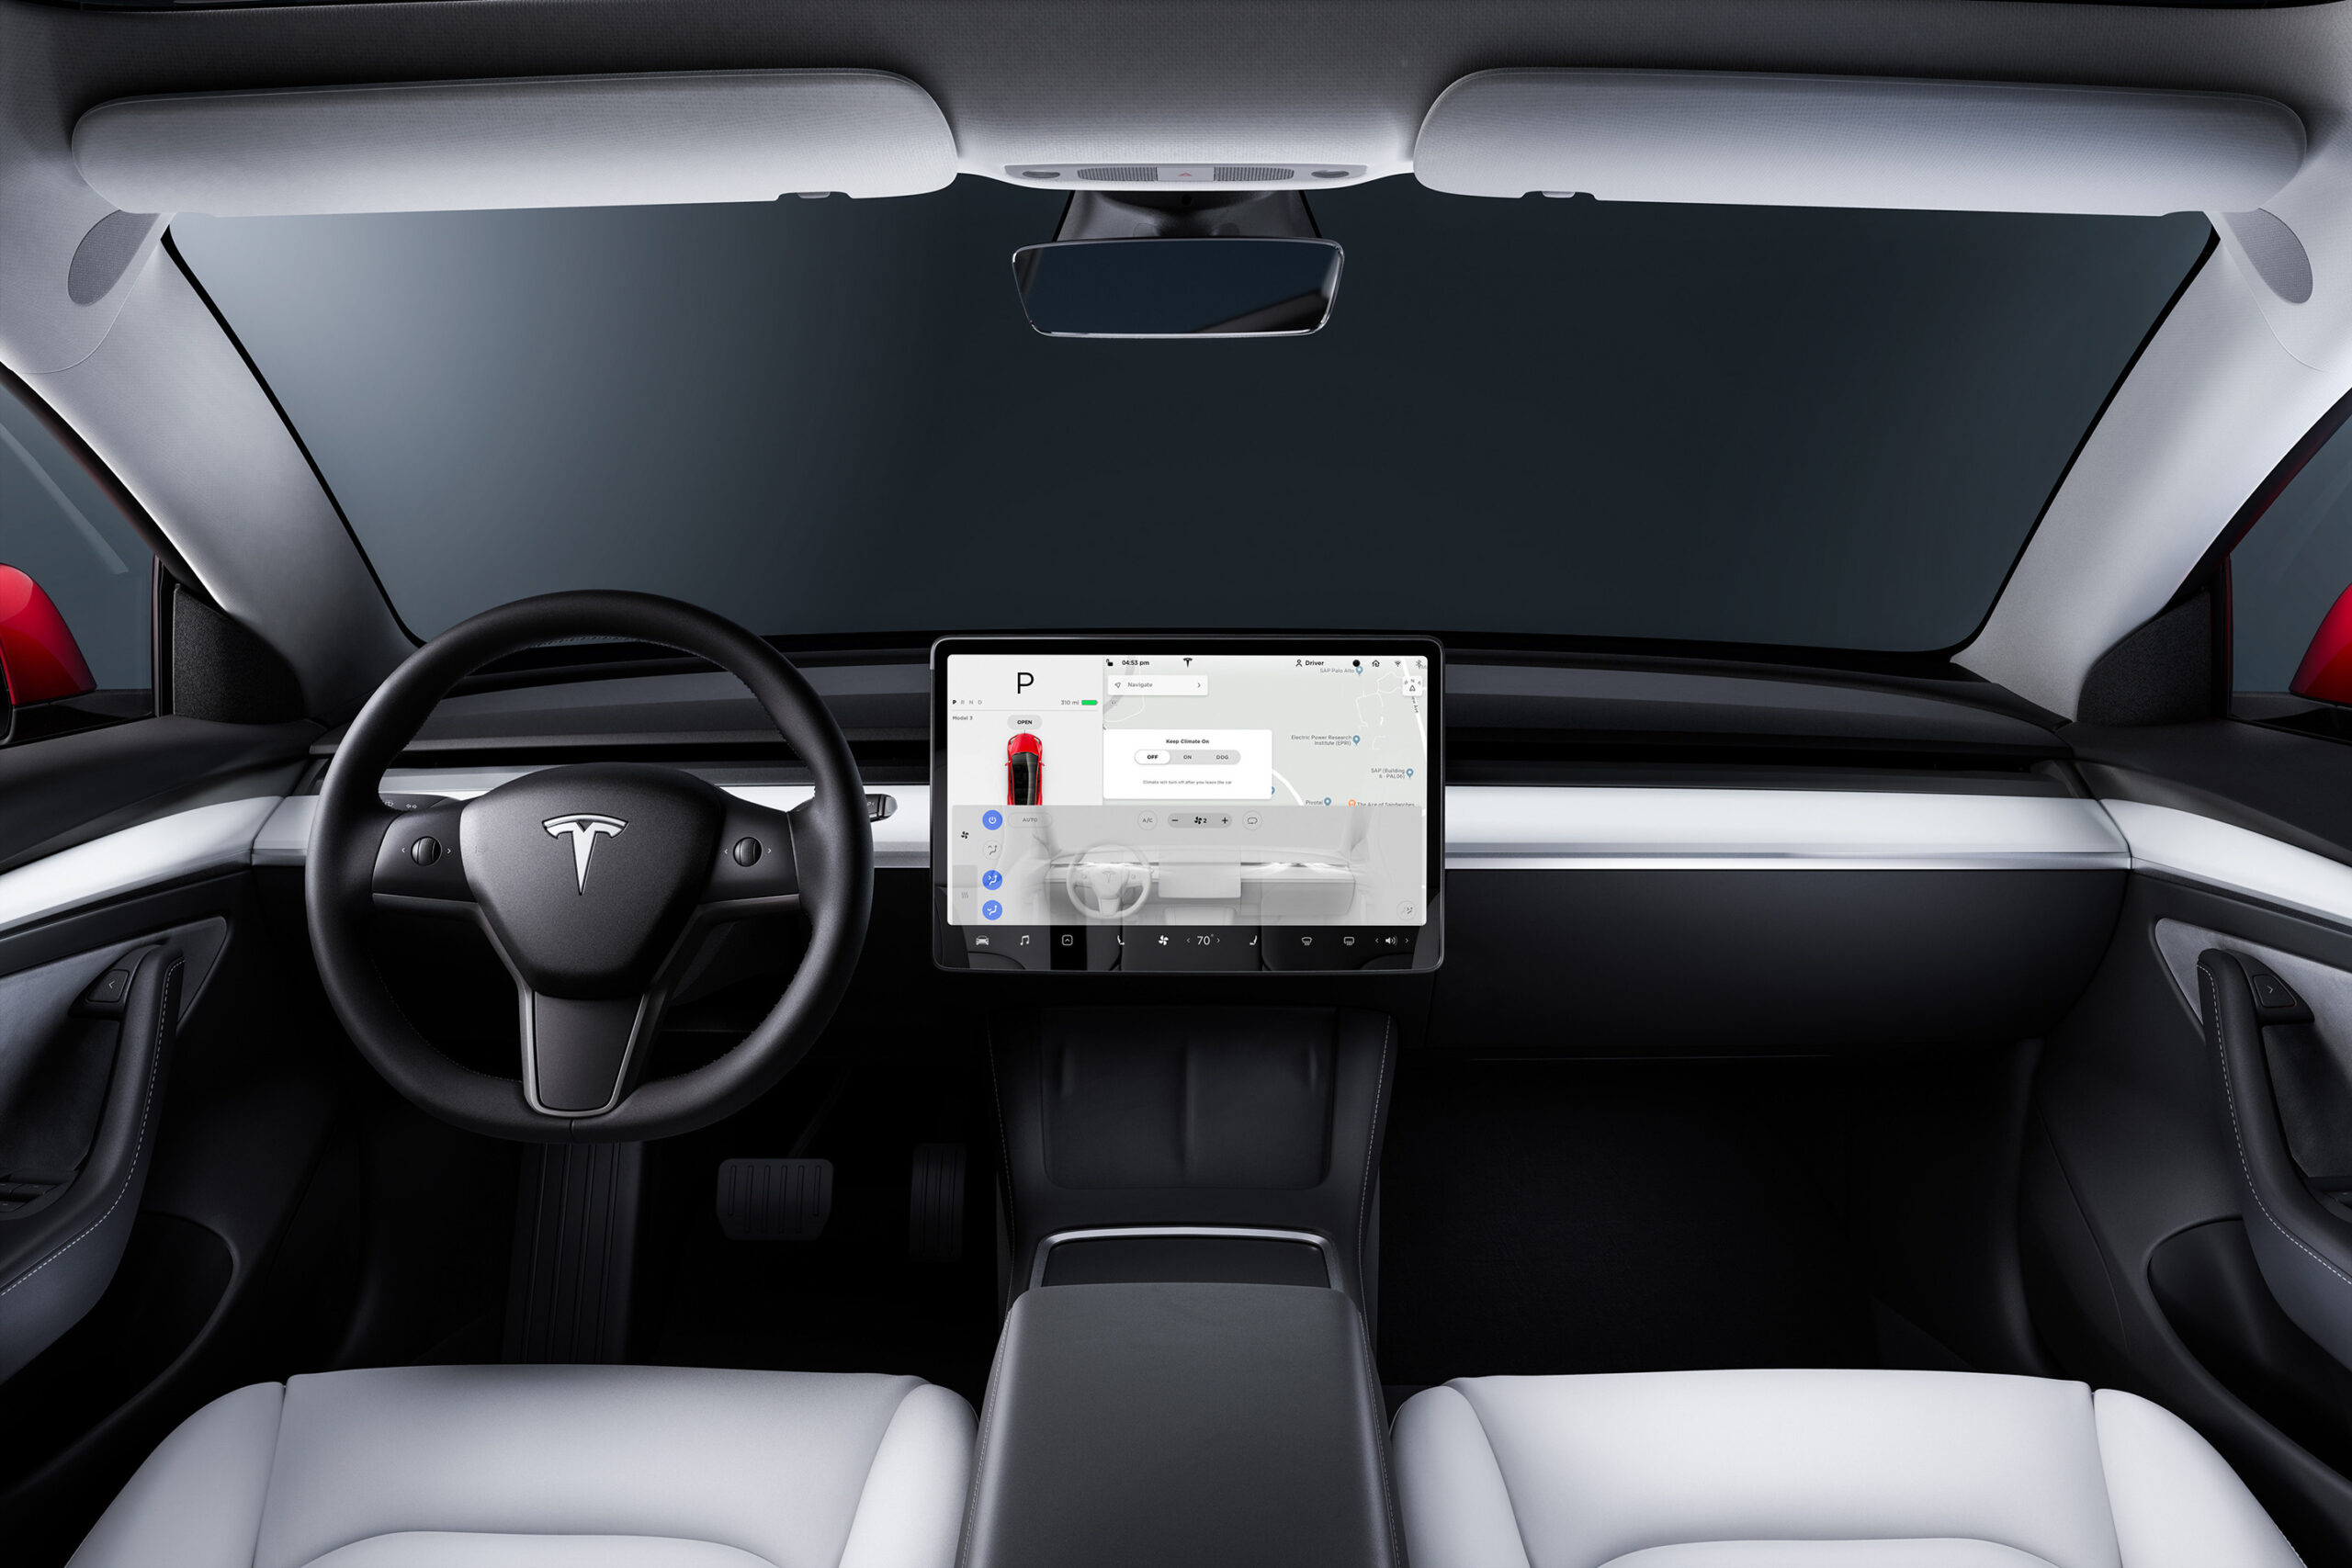 Les images prises par la caméra intérieure de la Model 3 - Tesla Model 3 -  Forum Automobile Propre